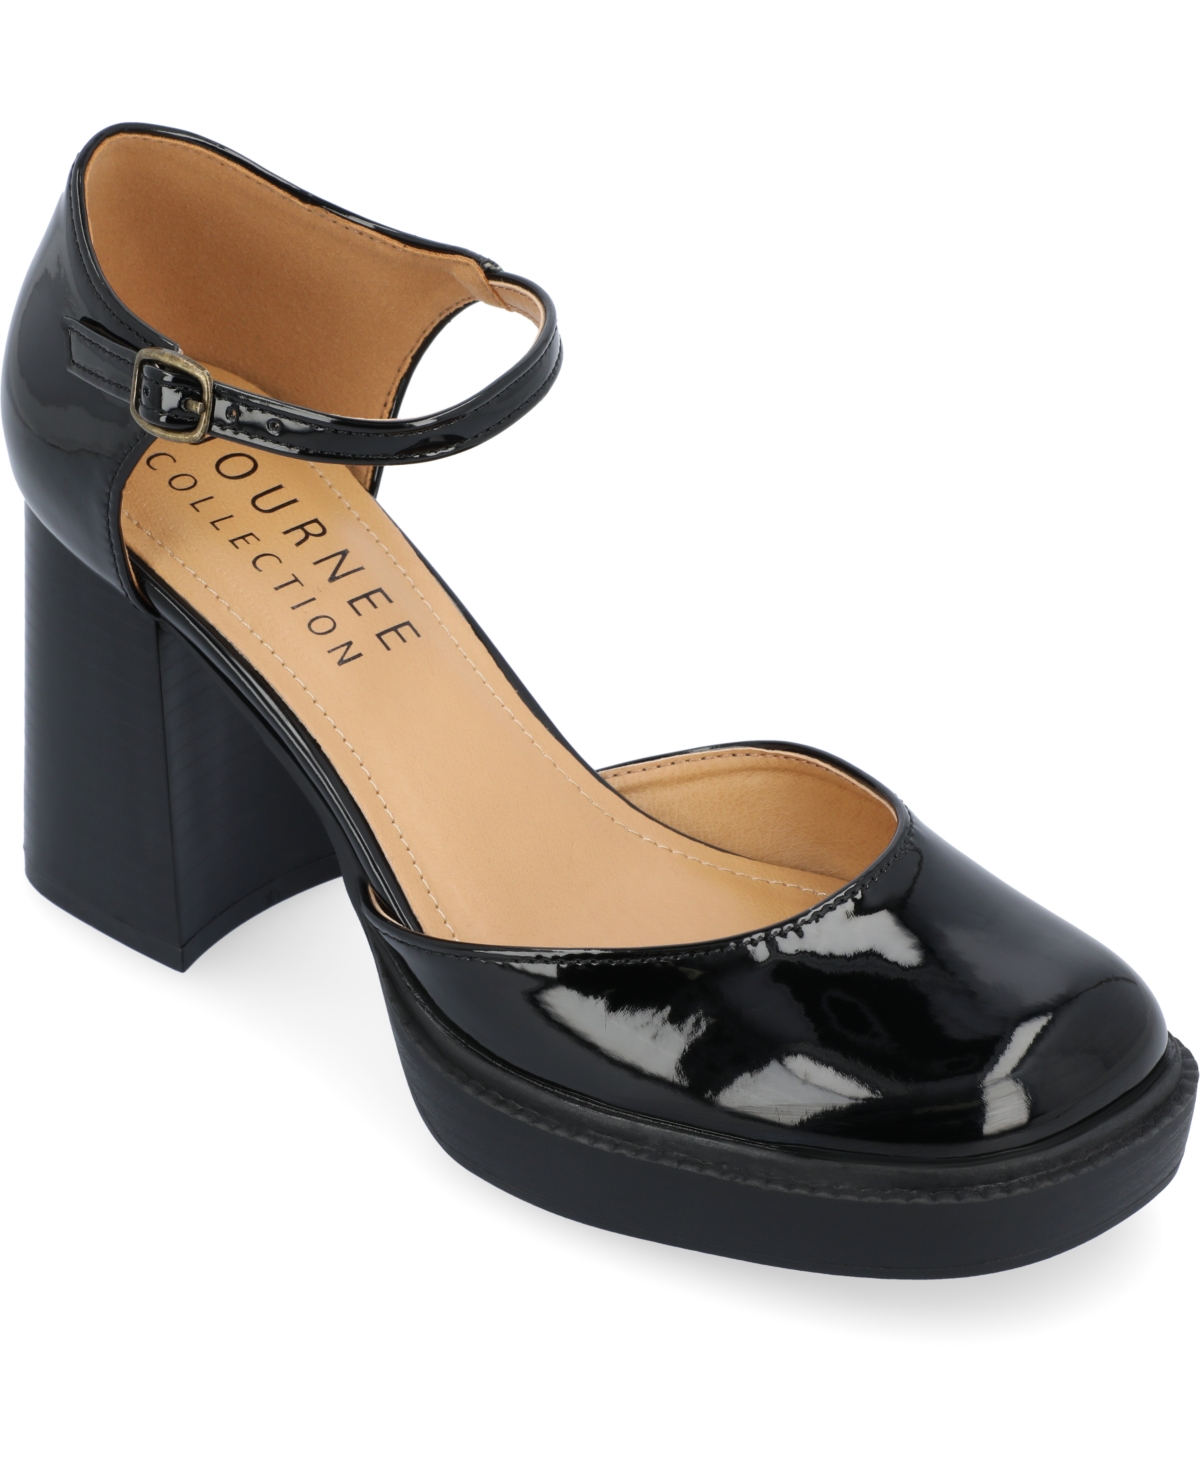 Women's Sophilynn Platform Heels - Black